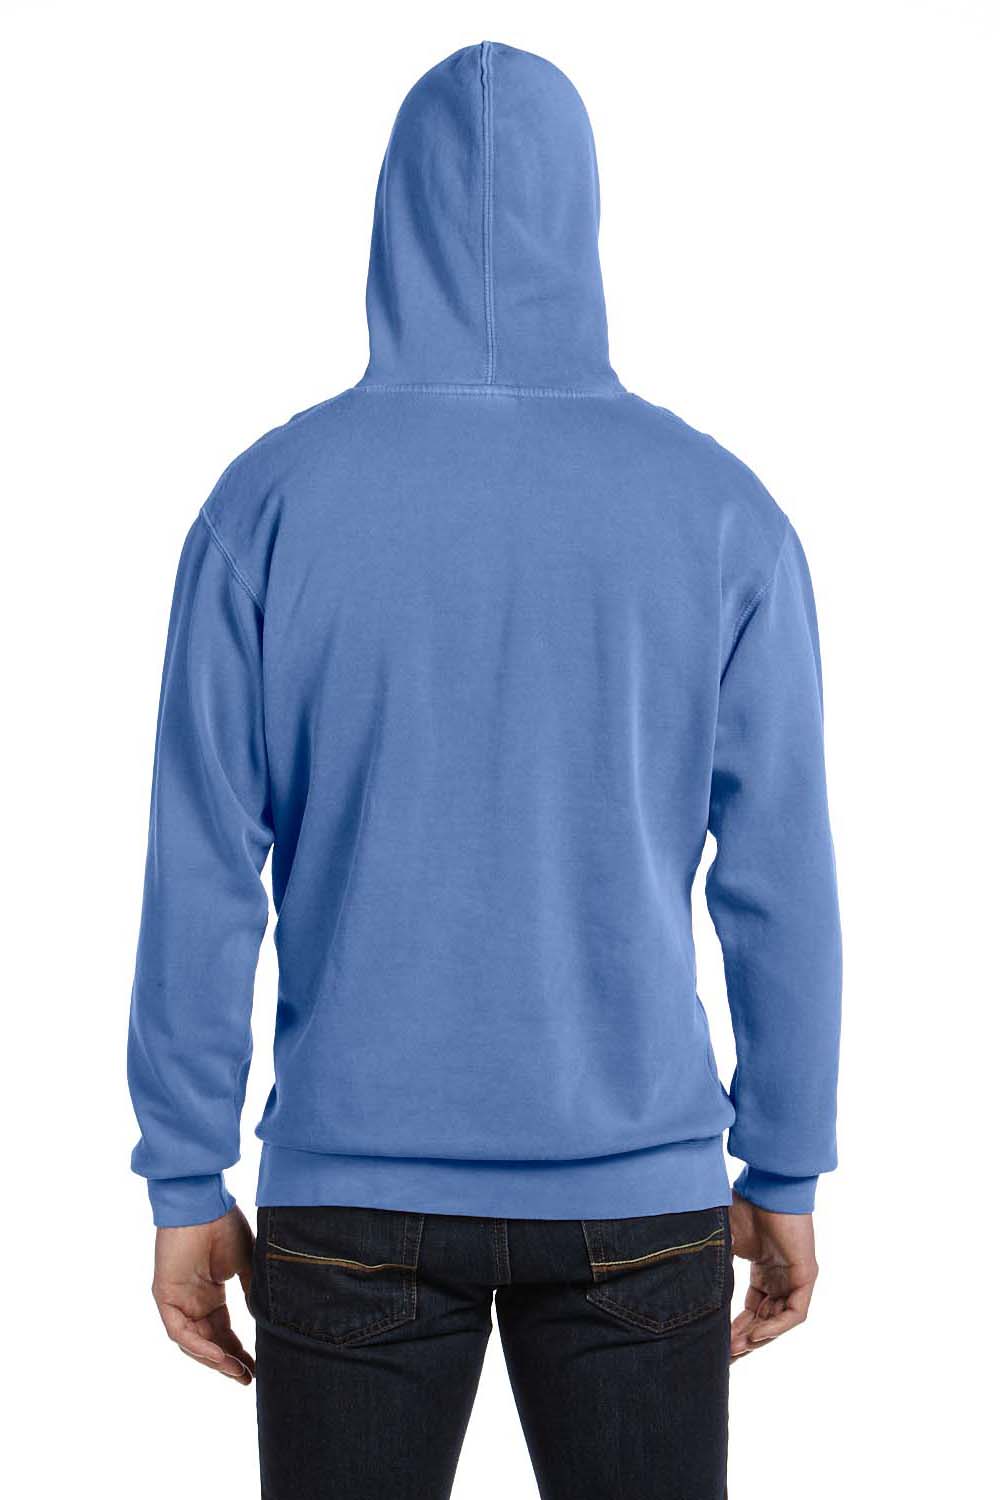 Comfort Colors 1567 Mens Hooded Sweatshirt Hoodie Flo Blue Back